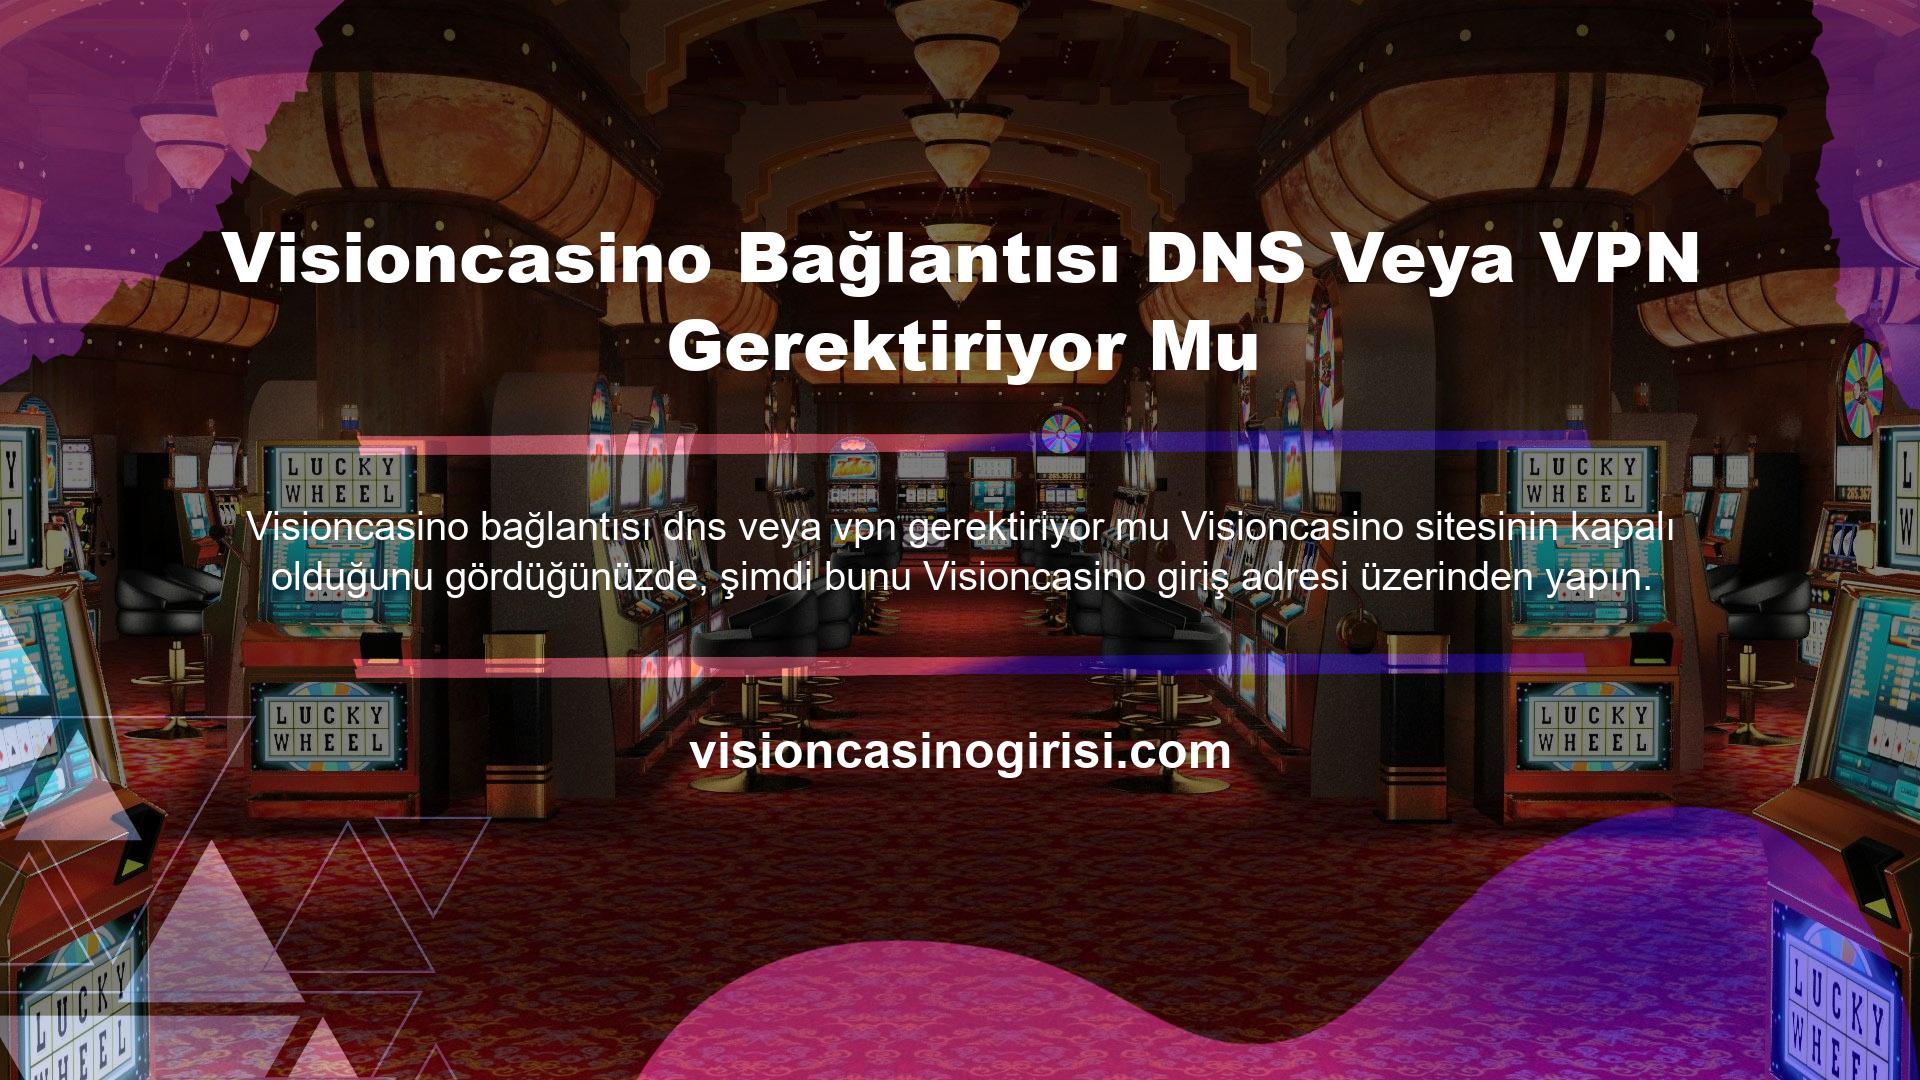 Visioncasino Bağlantısı DNS Veya VPN Gerektiriyor Mu